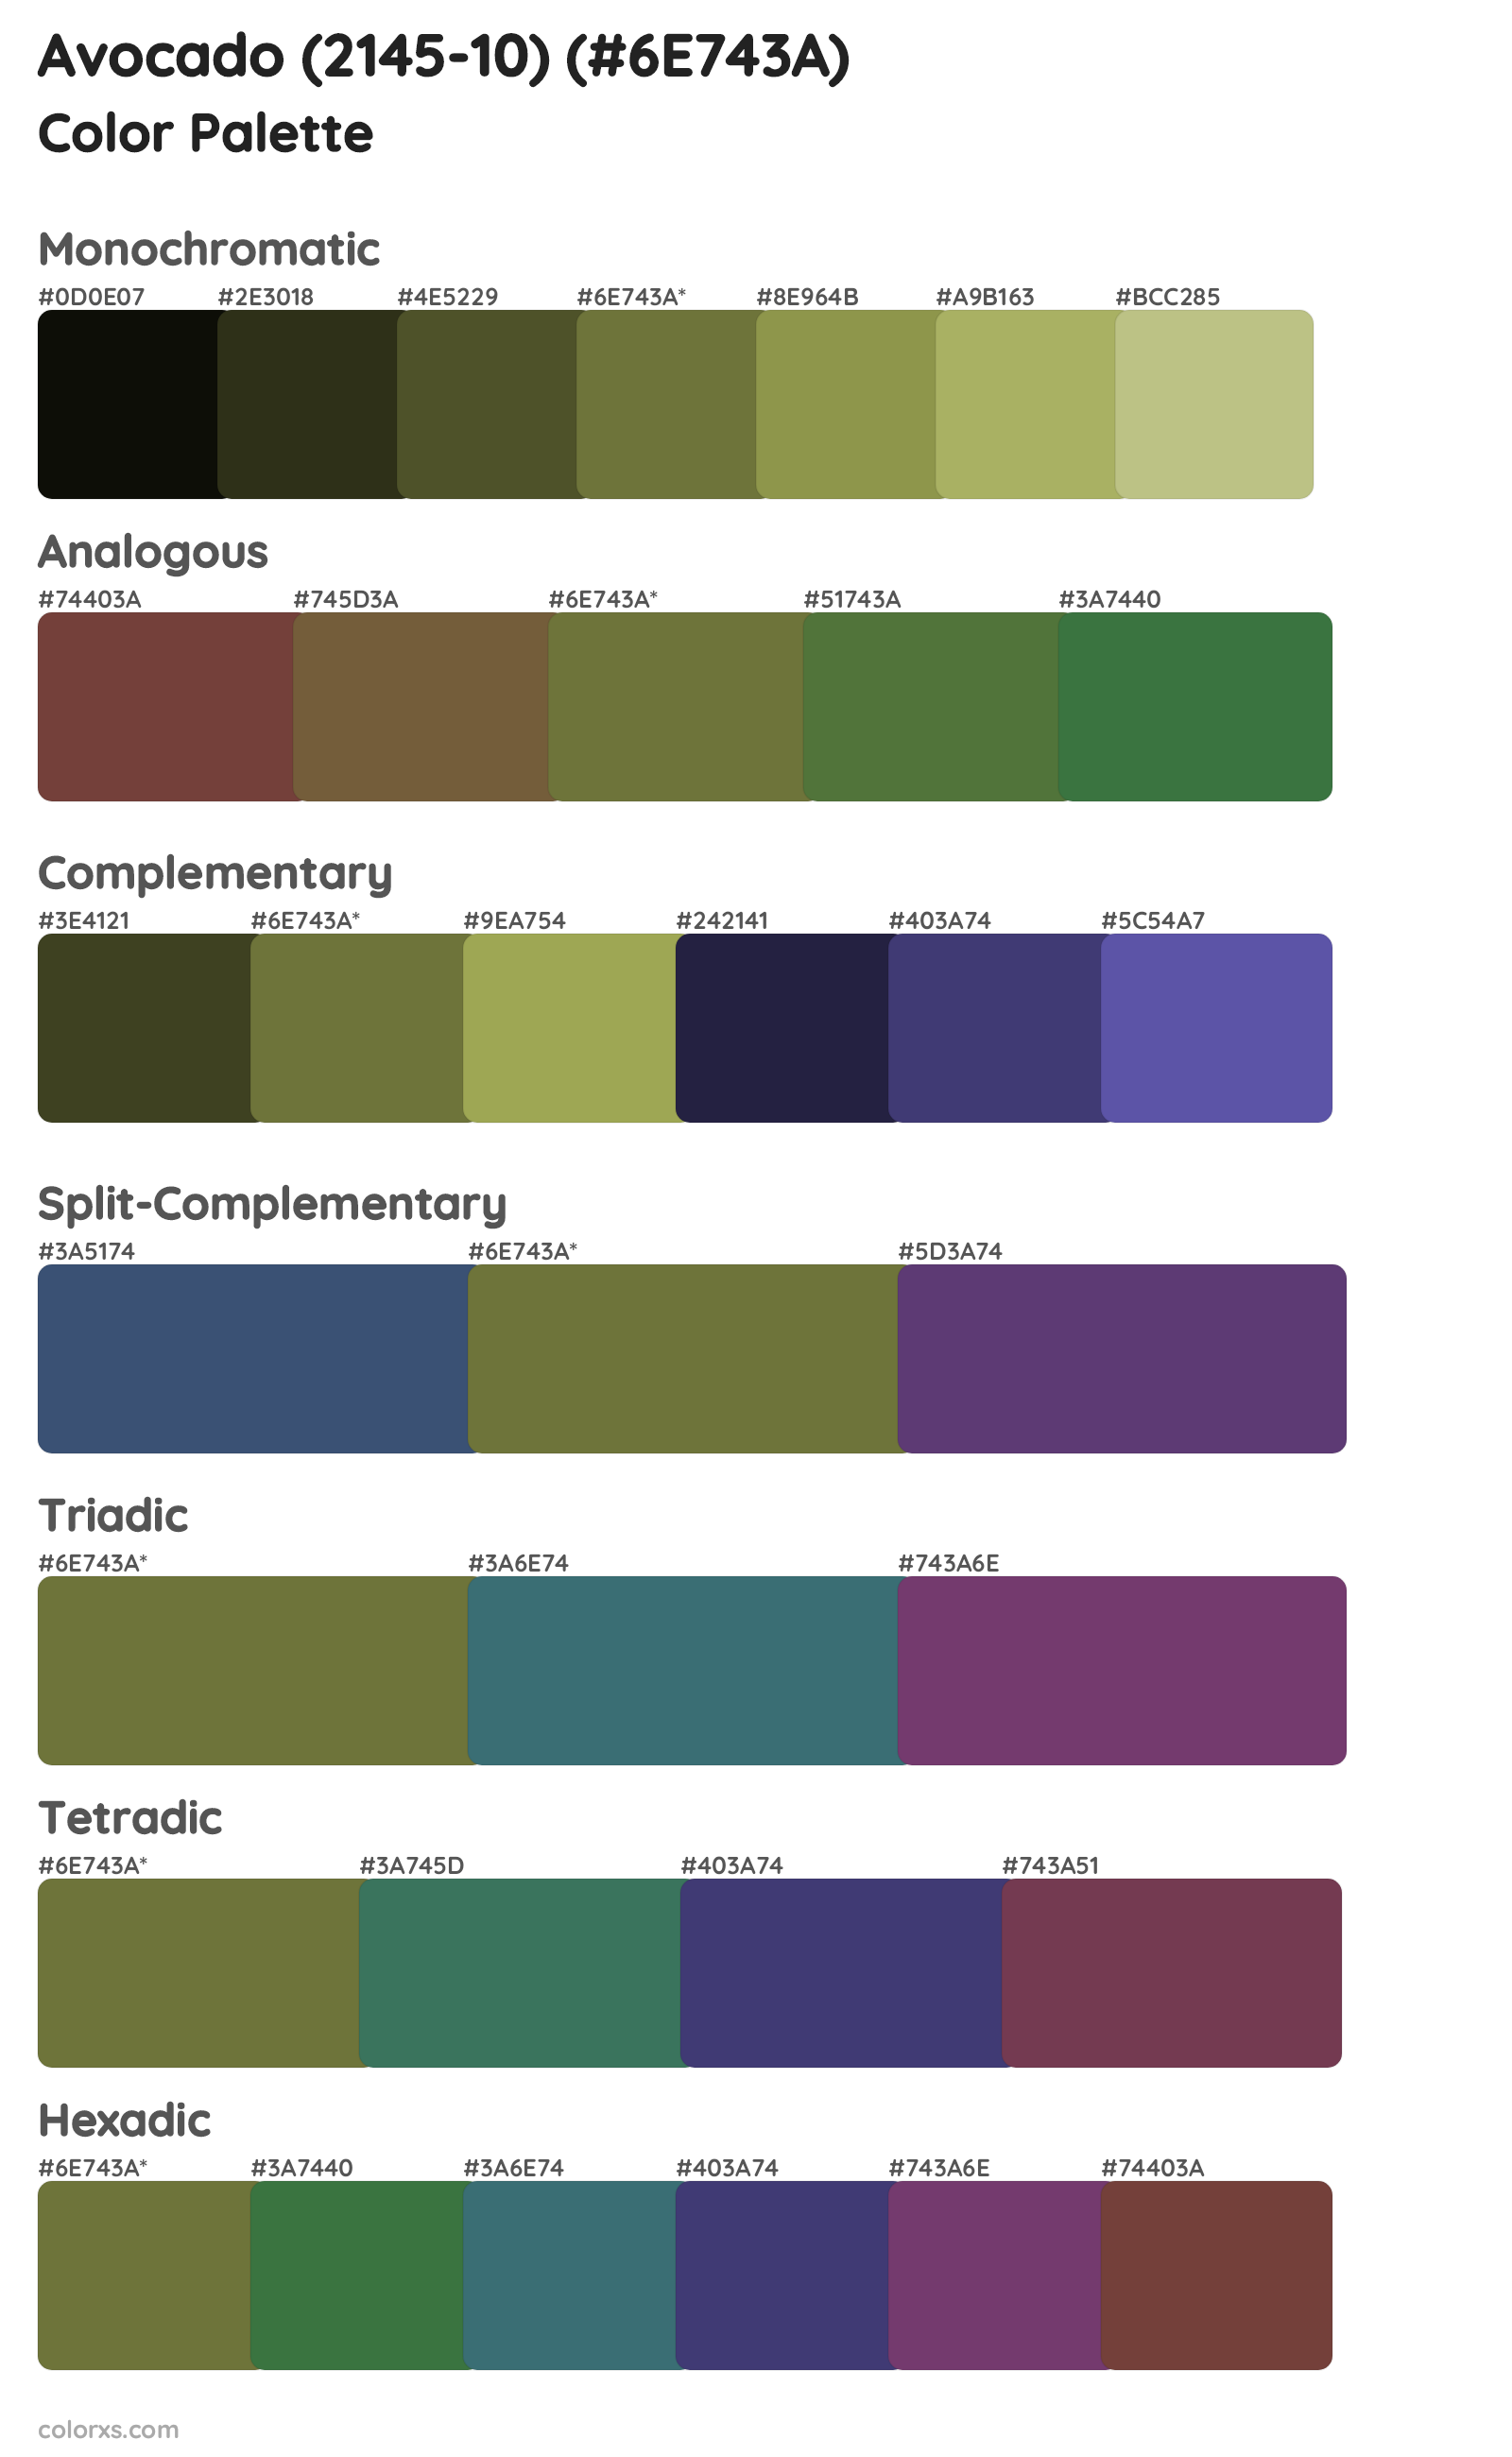 Avocado (2145-10) Color Scheme Palettes